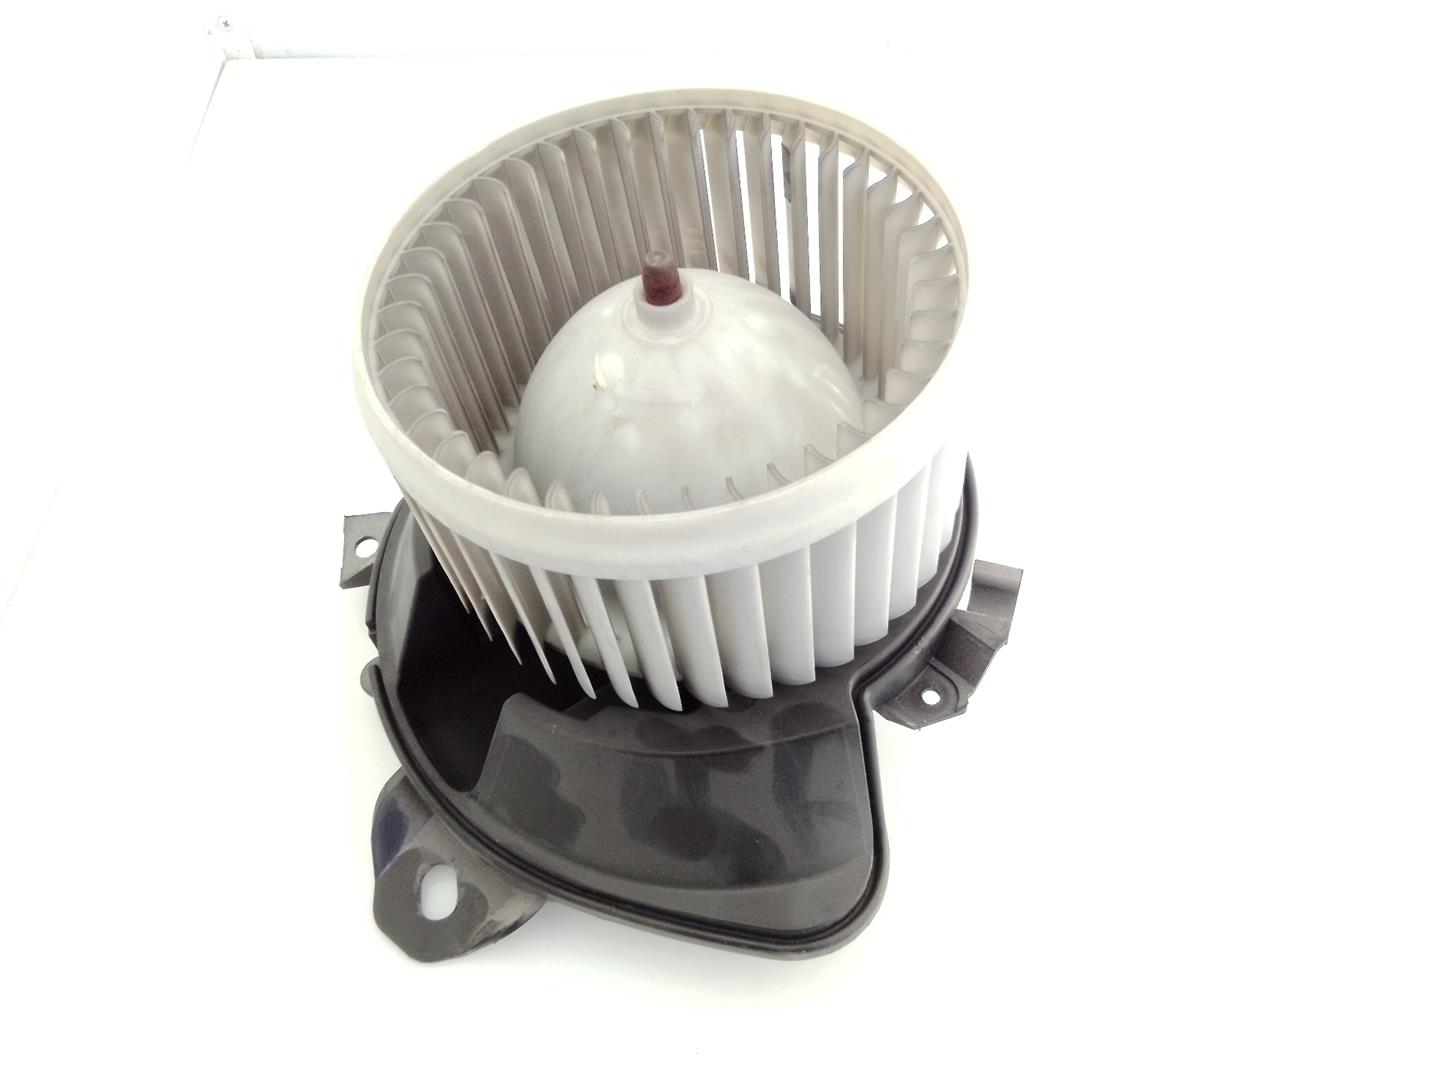 PEUGEOT Bipper 1 generation (2008-2020) Heater Blower Fan 507730100, 507830100, E3-B2-36-4 20955484